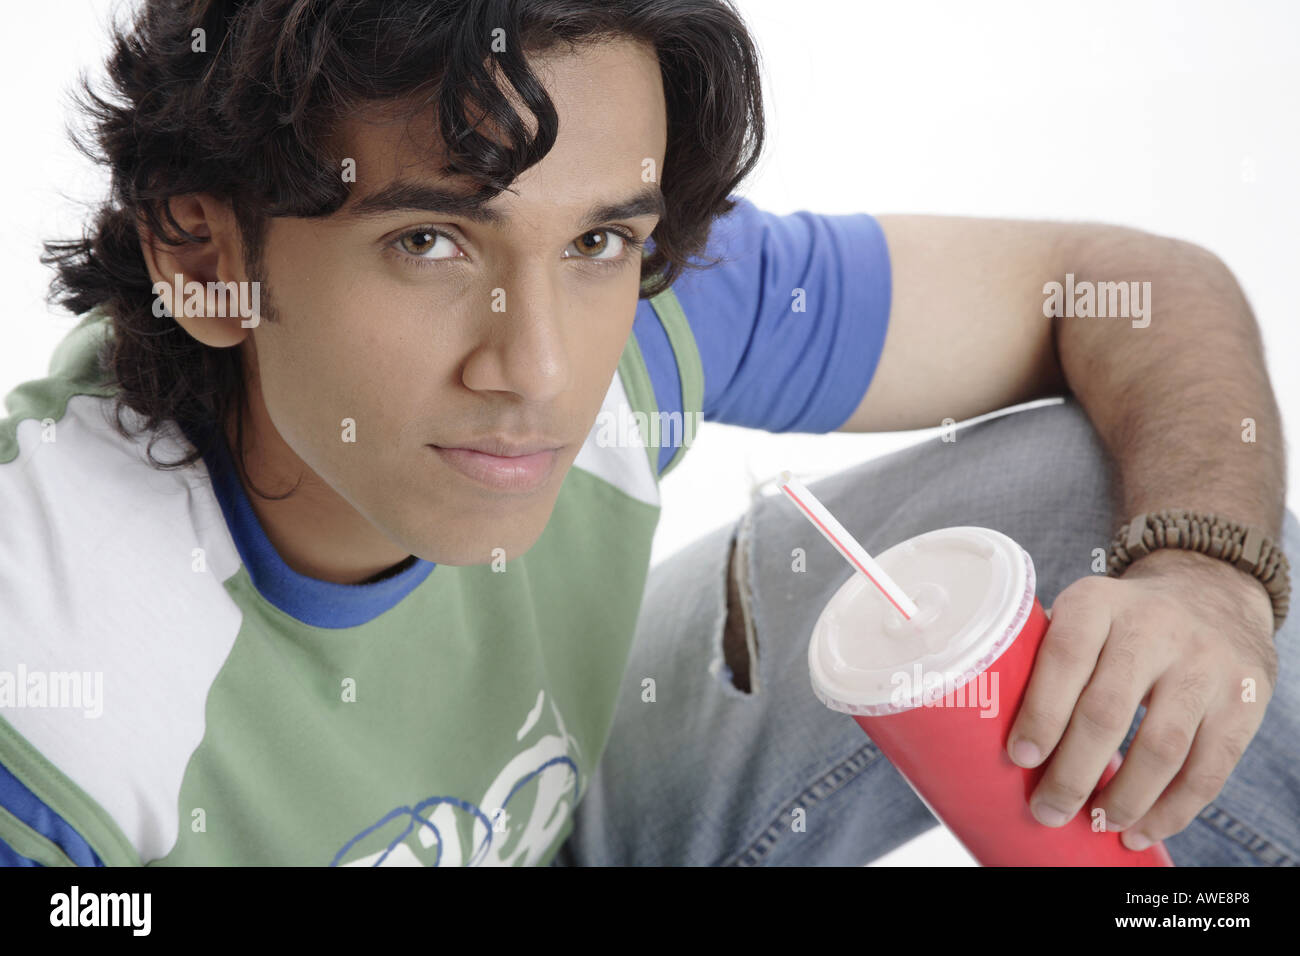 ANG200456 Teenage boy holding verre de soft drink smiling MR 687T Banque D'Images